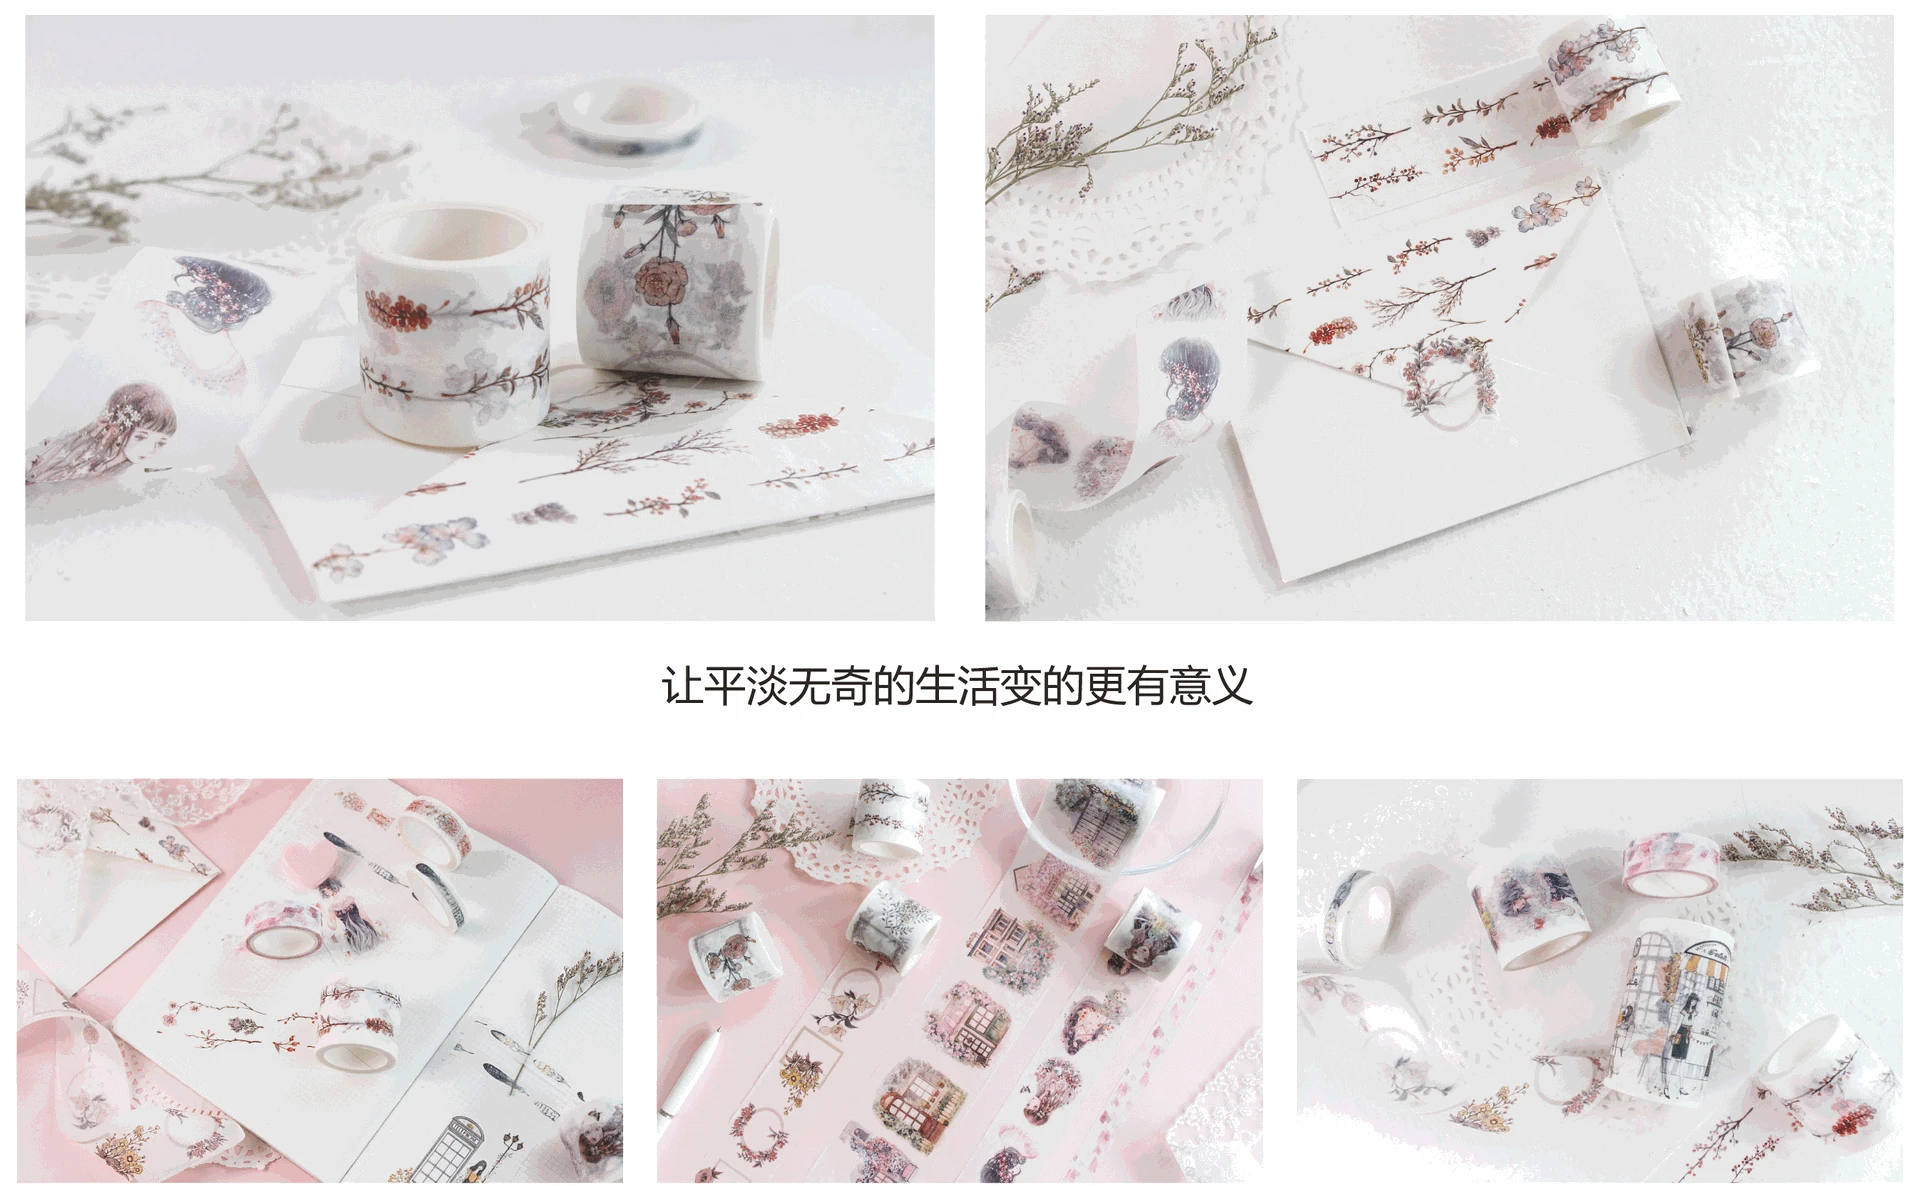 6 видов конструкций новые цветы/окна/девушки/узор японский Васи декоративный клей DIY маскирующая бумага клейкие ленты наклейки этикетки